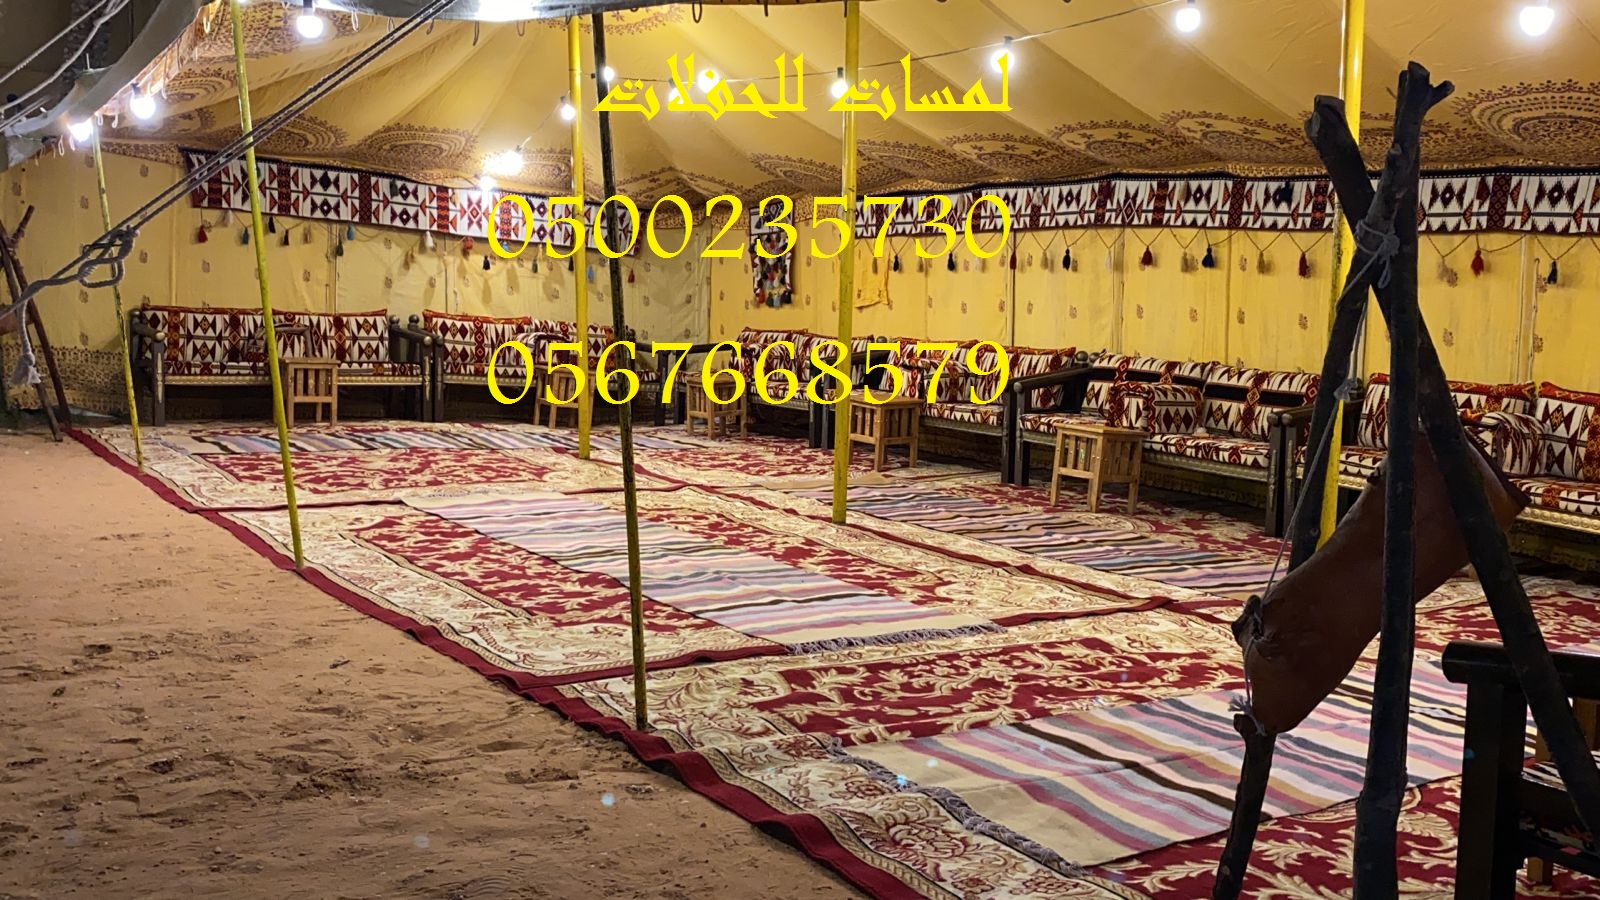 تأجير كراسي بار في الرياض ، طاولات طعام مع كراسي 8597 766 056